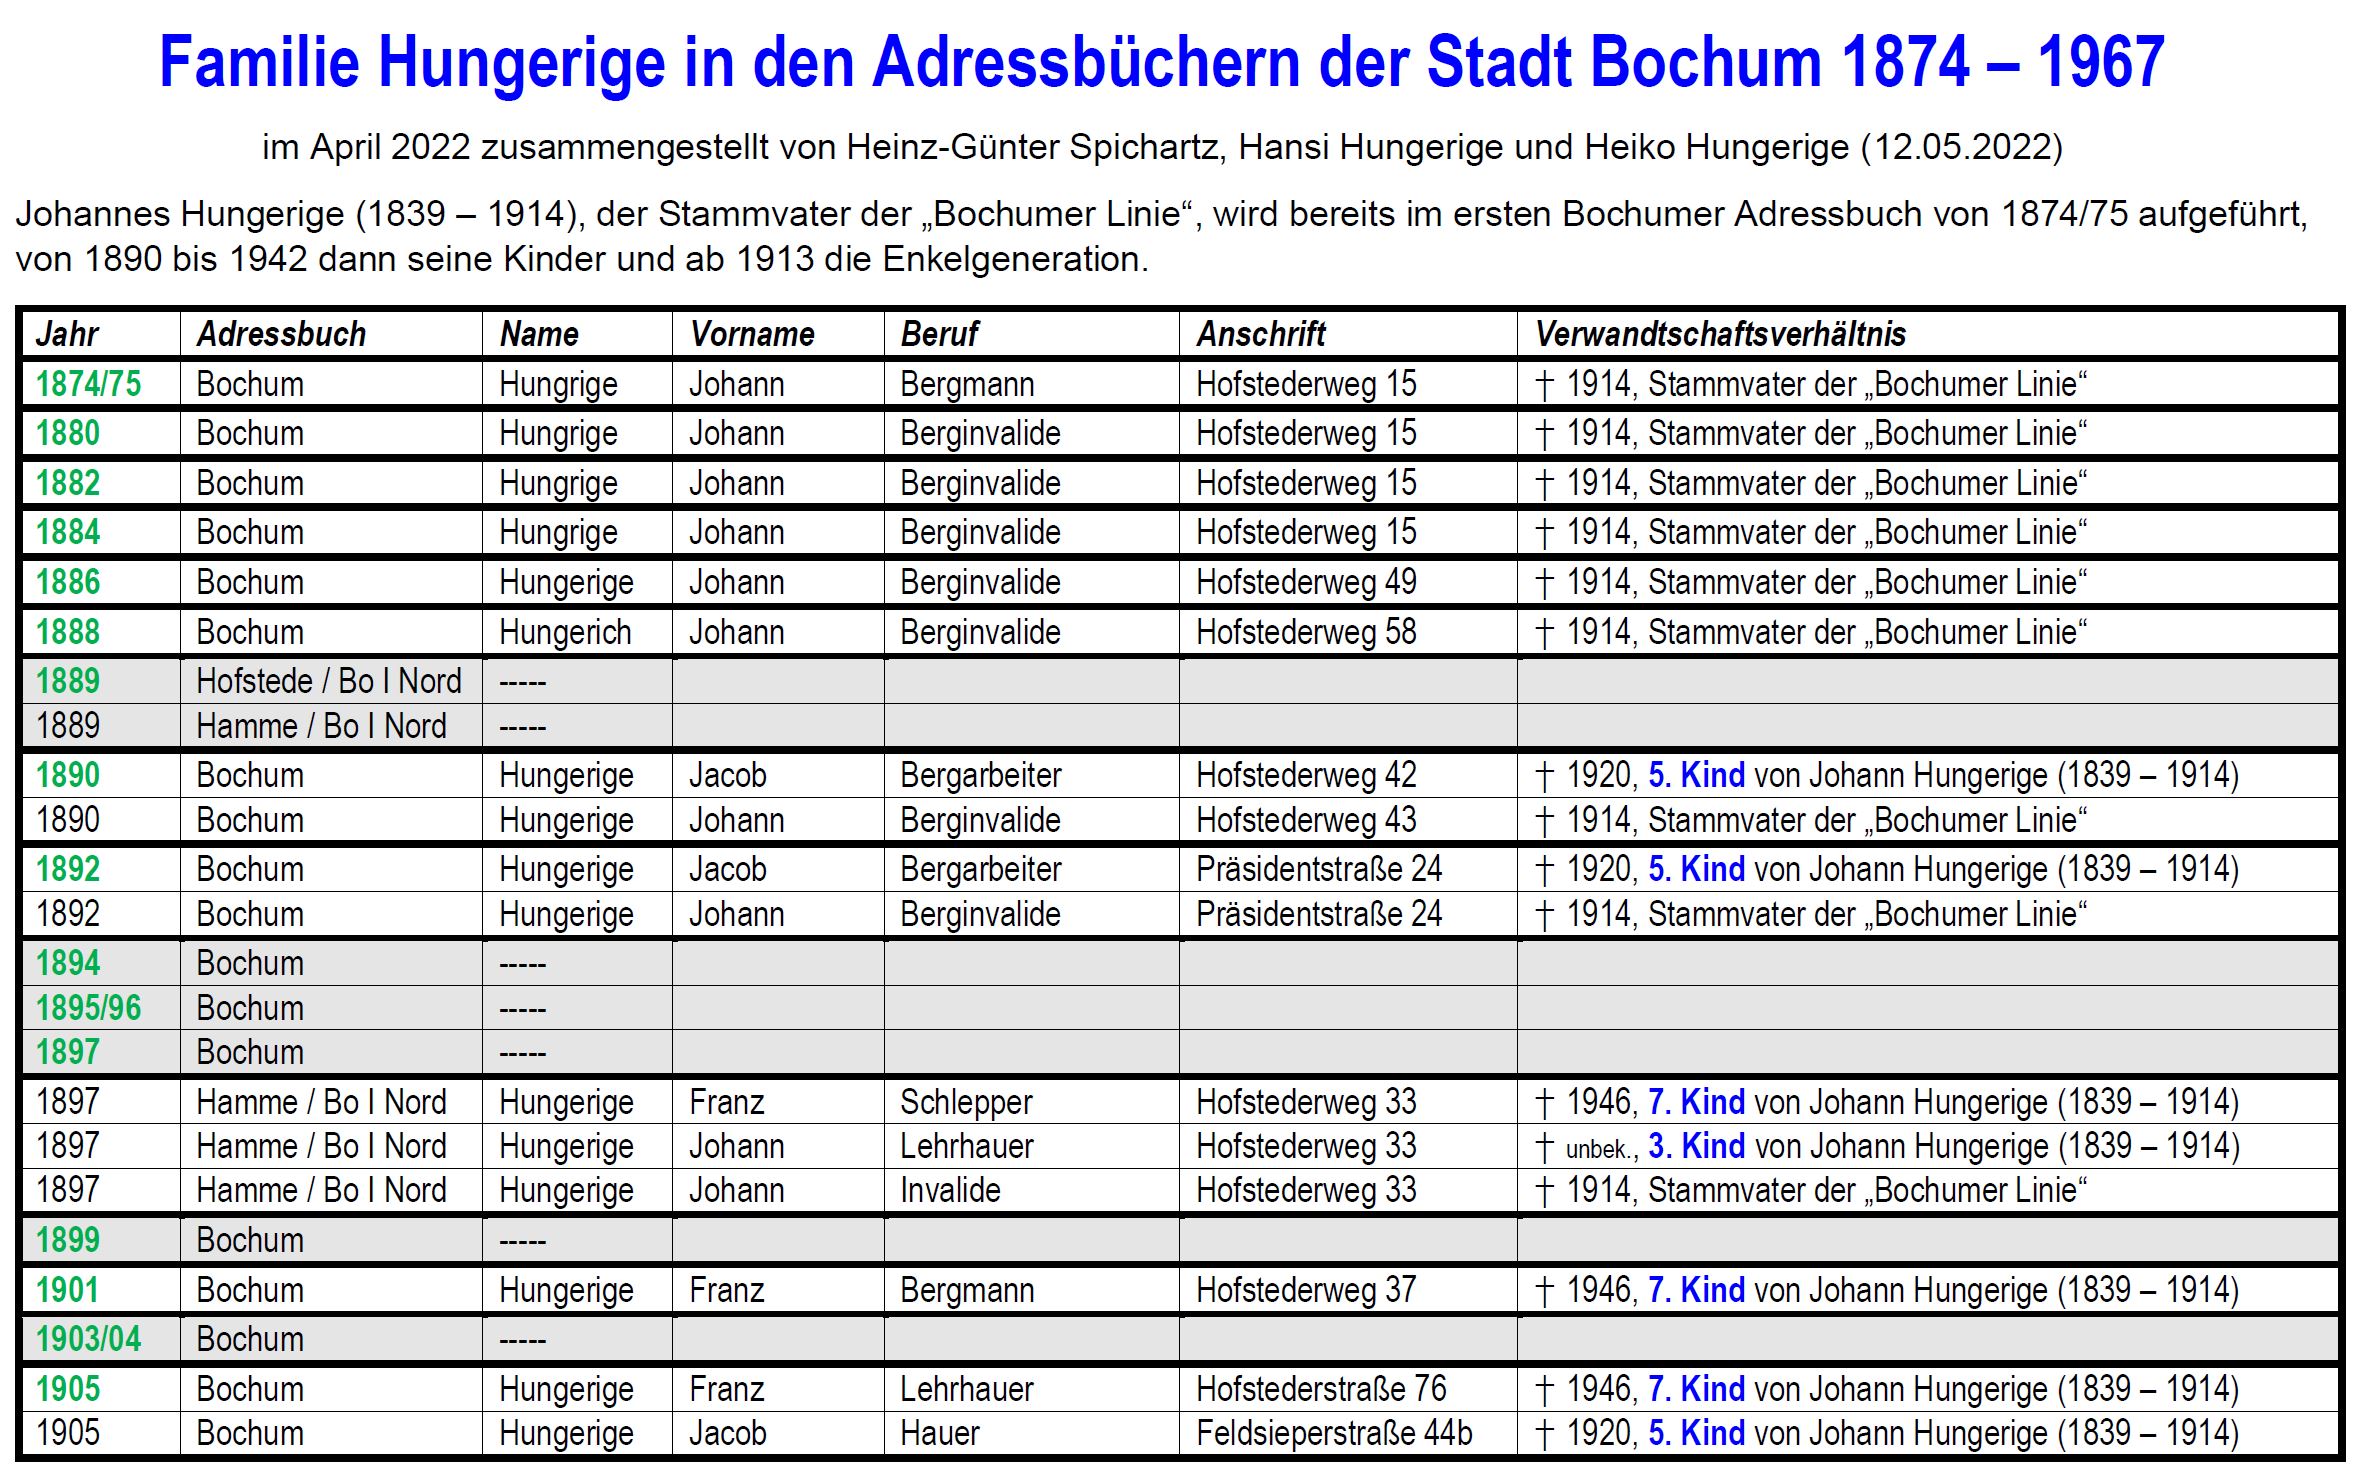 Hungerige et al. (2022), Familie Hungerige in den Adressbüchern der Stadt Bochum 1874-1967